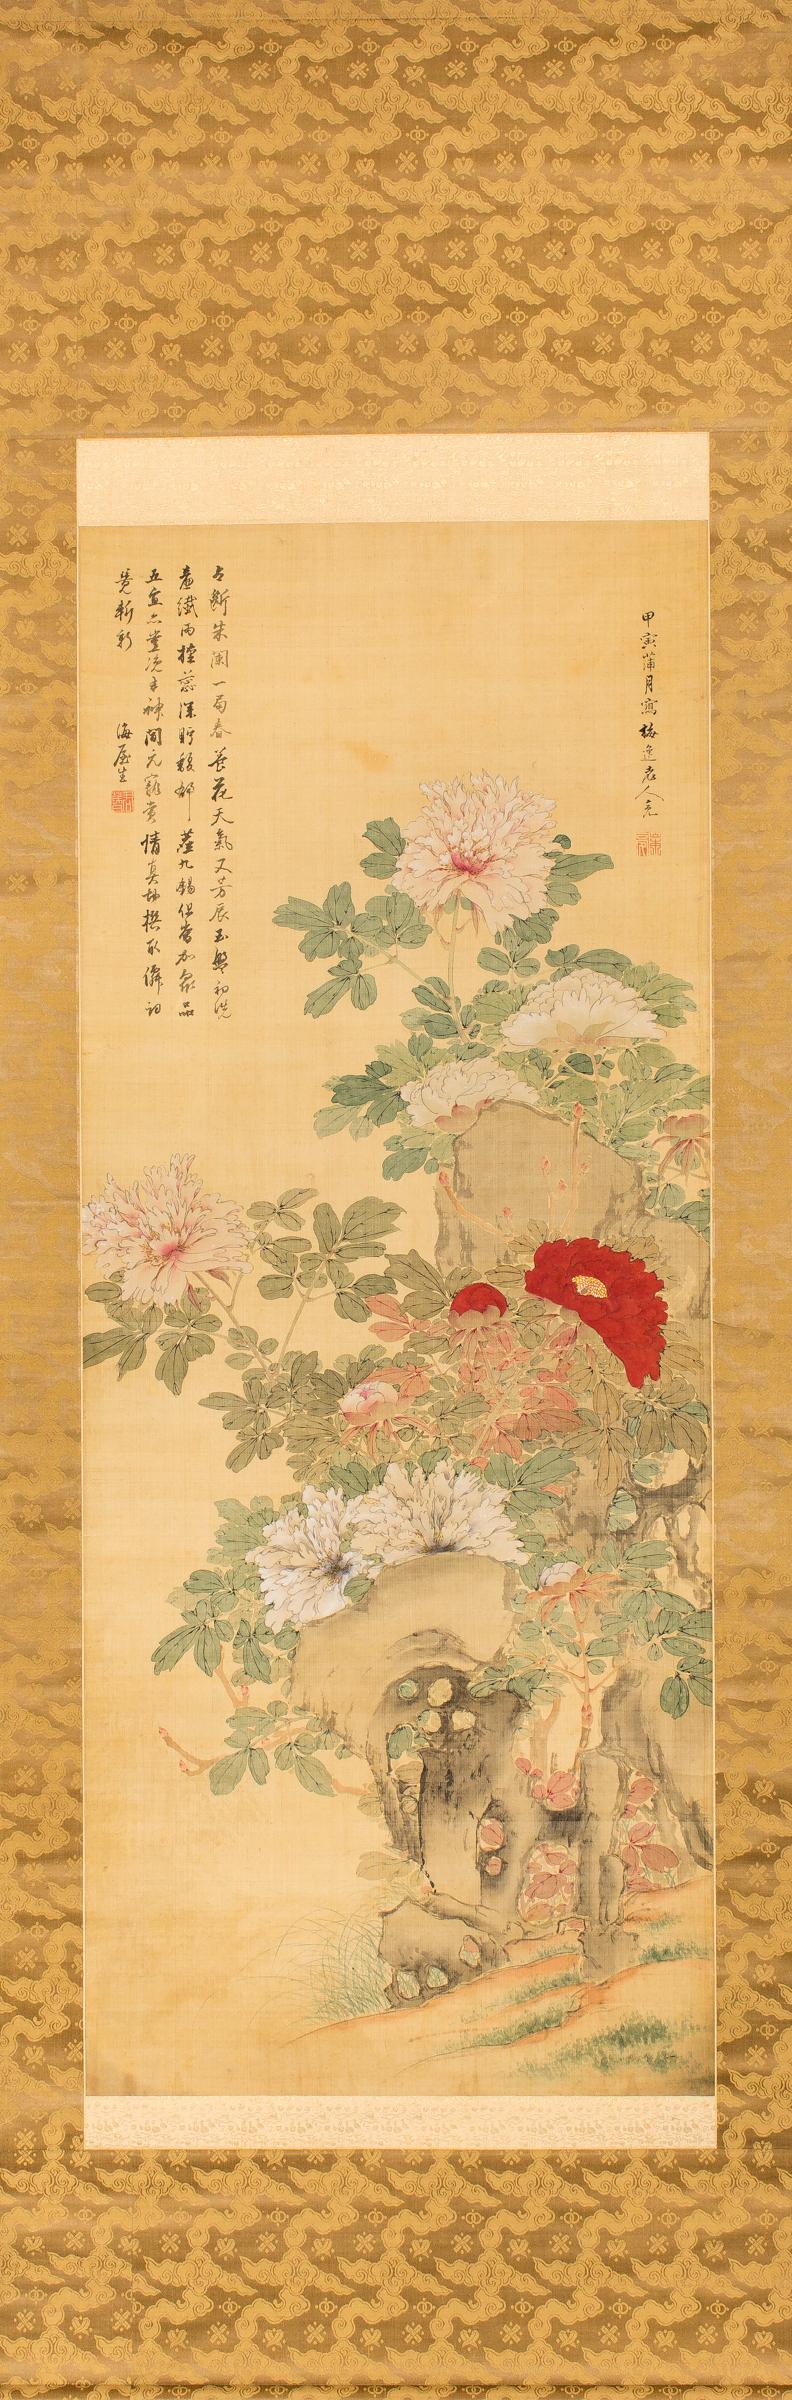 Rouleau japonais ancien de pivoines de la période Edo (première moitié du XIXe siècle). Signature et sceau lus : Baiitsu Yamamoto, (1783-1856). Yamamoto était l'artiste attitré d'une famille de la région de Nagoya. Il était connu pour ses peintures